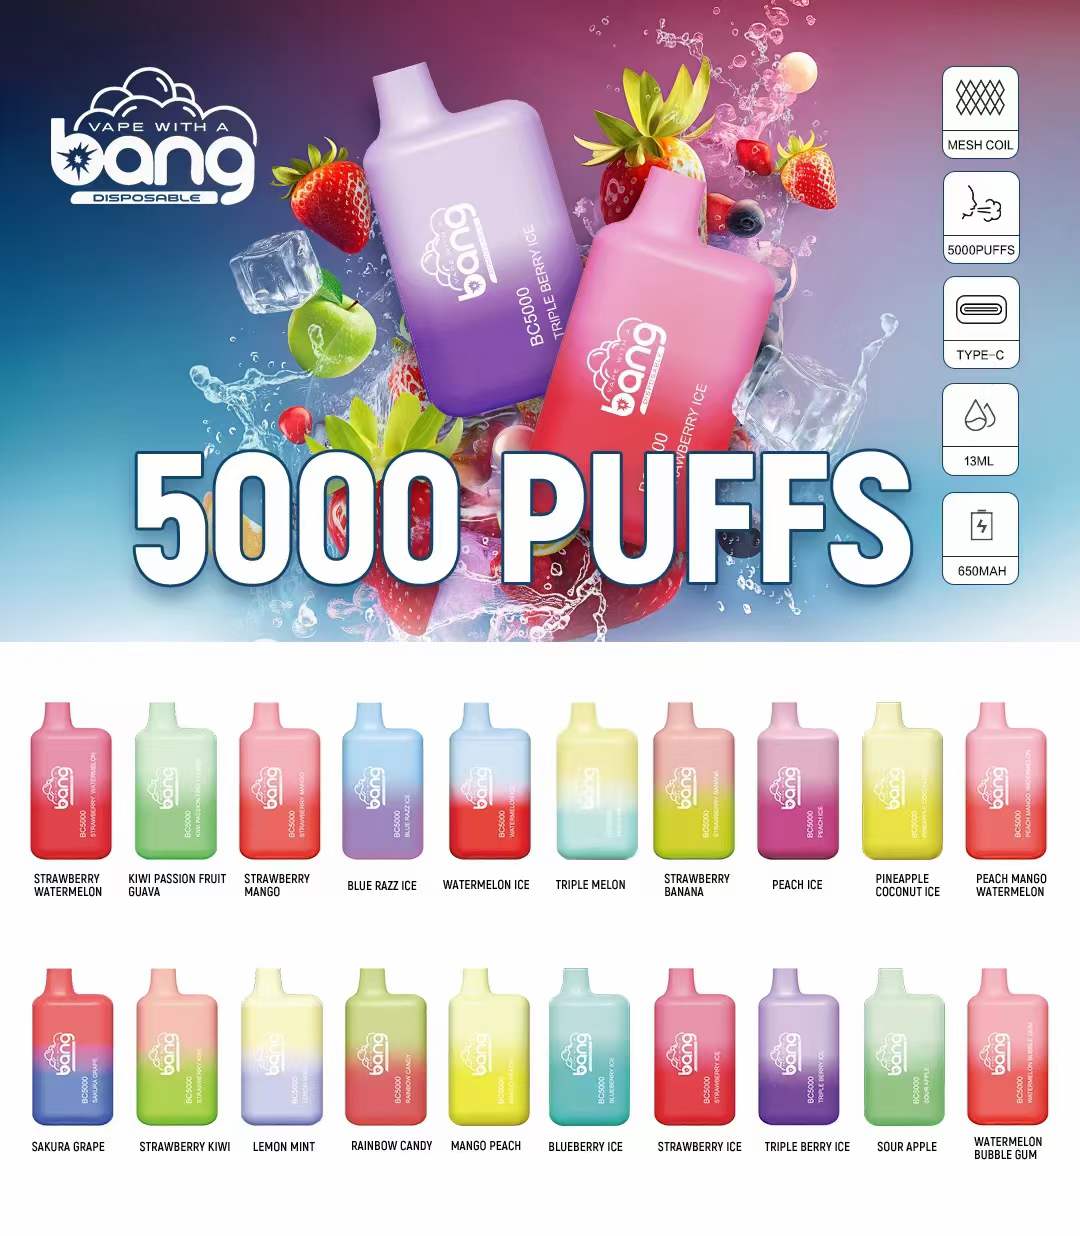 Bang BC5000 Disposable Vape Wholesale